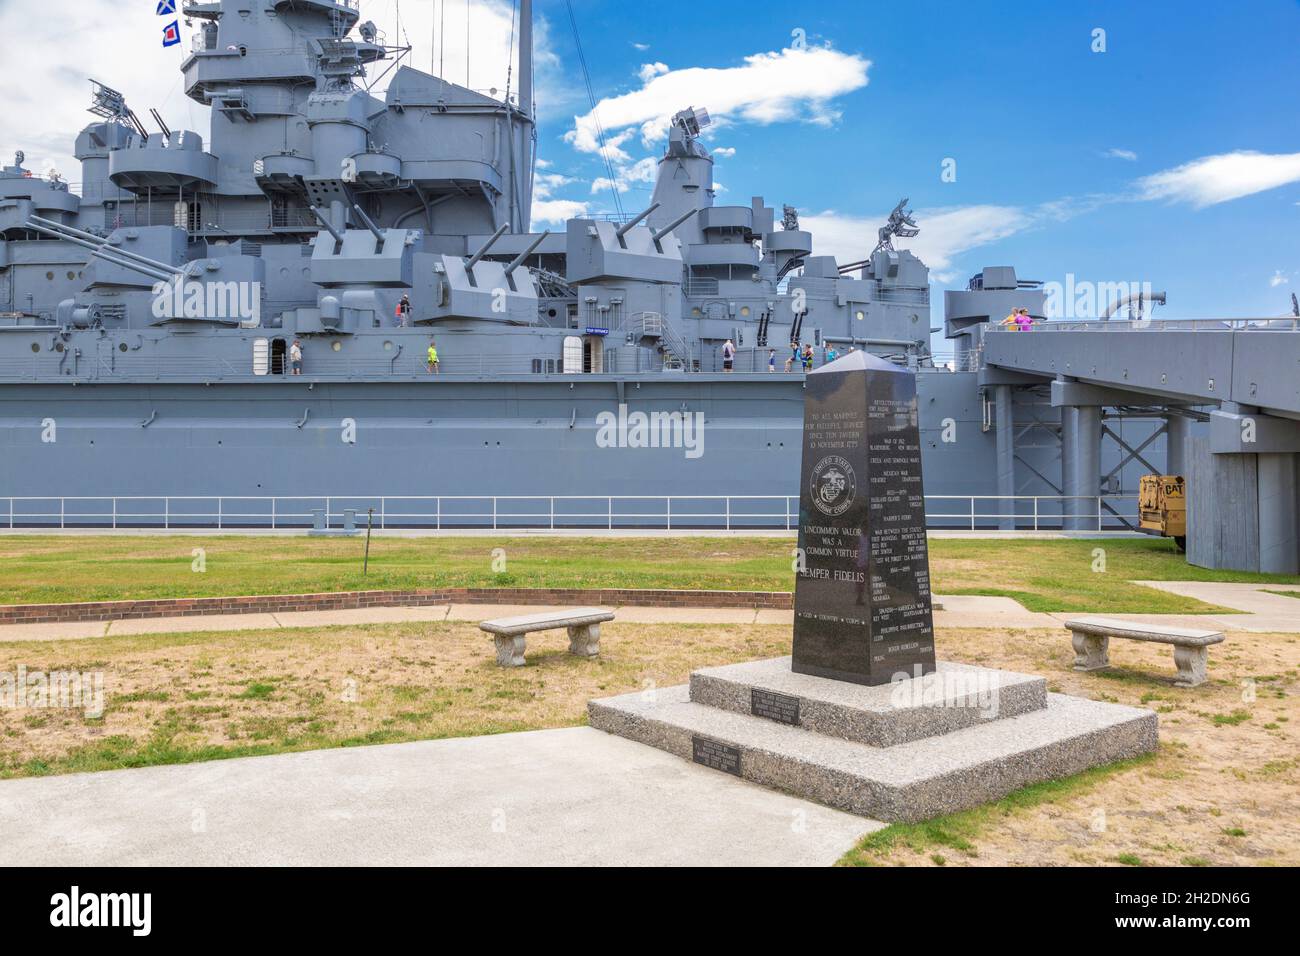 Monument commémoratif en granit sculpté hommage au corps des Marines des États-Unis au Battleship Memorial Park de Mobile, Alabama Banque D'Images